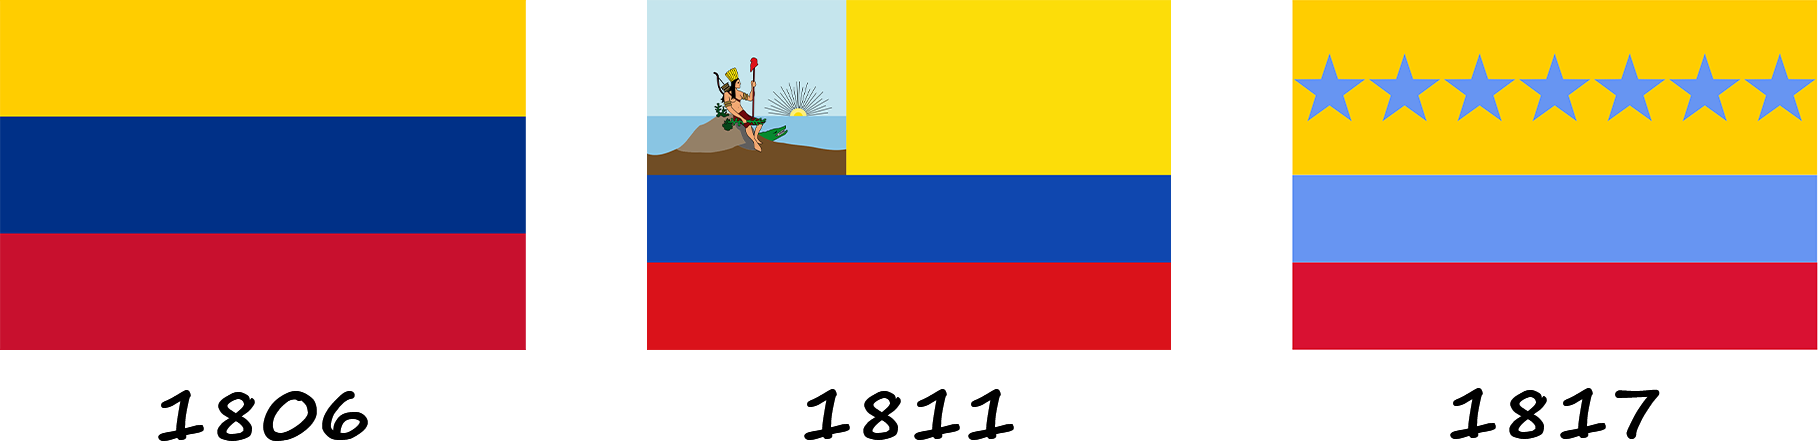 Історія прапору Венесуели